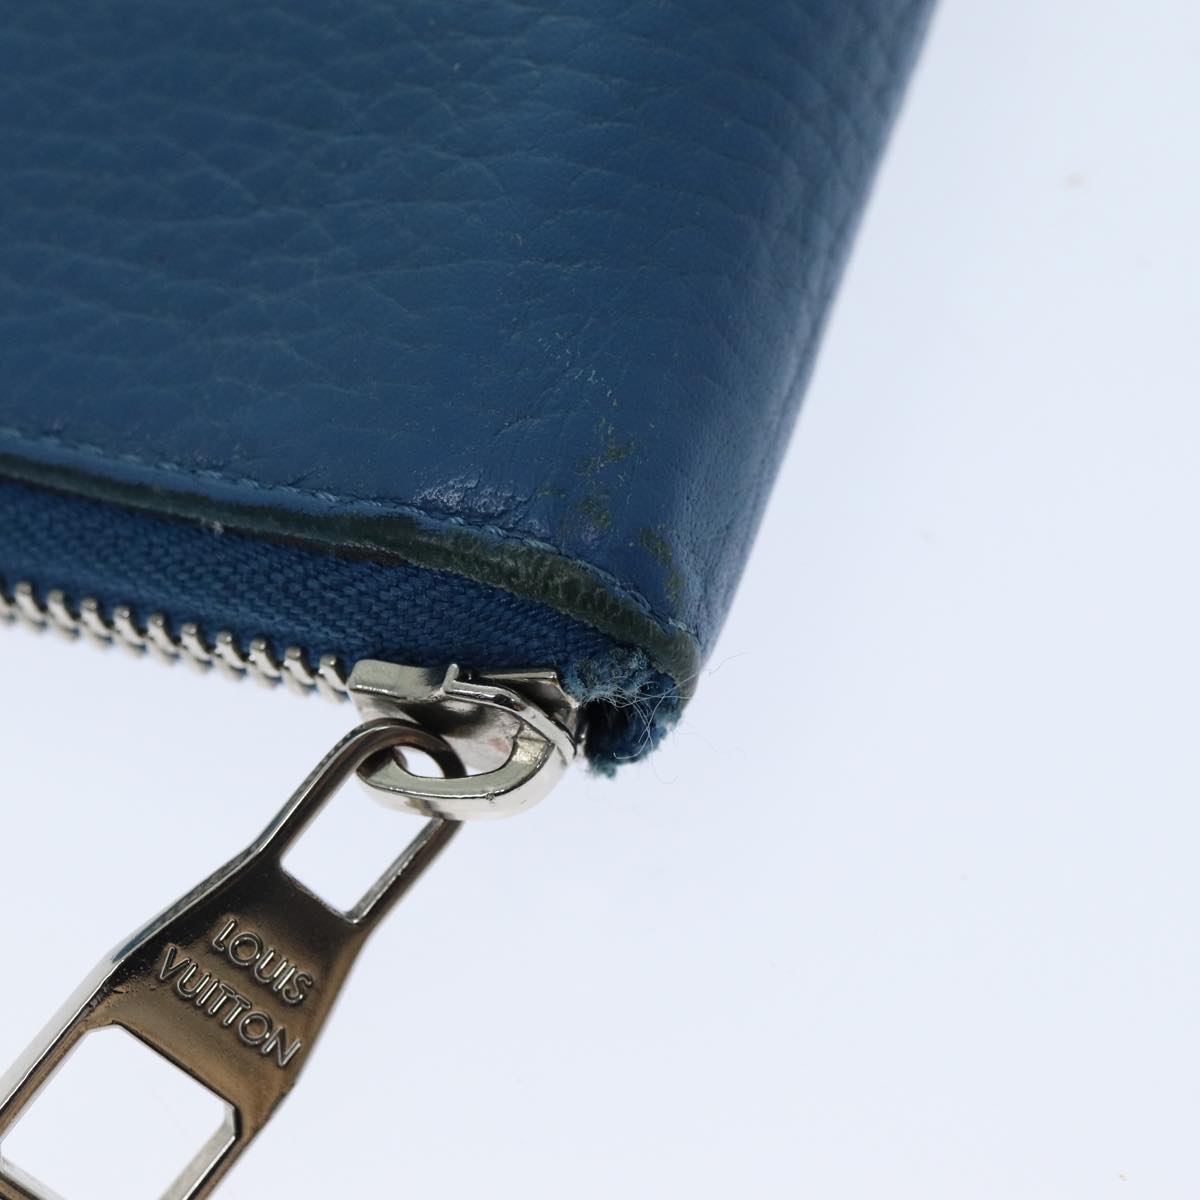 LOUIS VUITTON Suhari Zippy Wallet Long Wallet Leather Blue LV Auth 75512